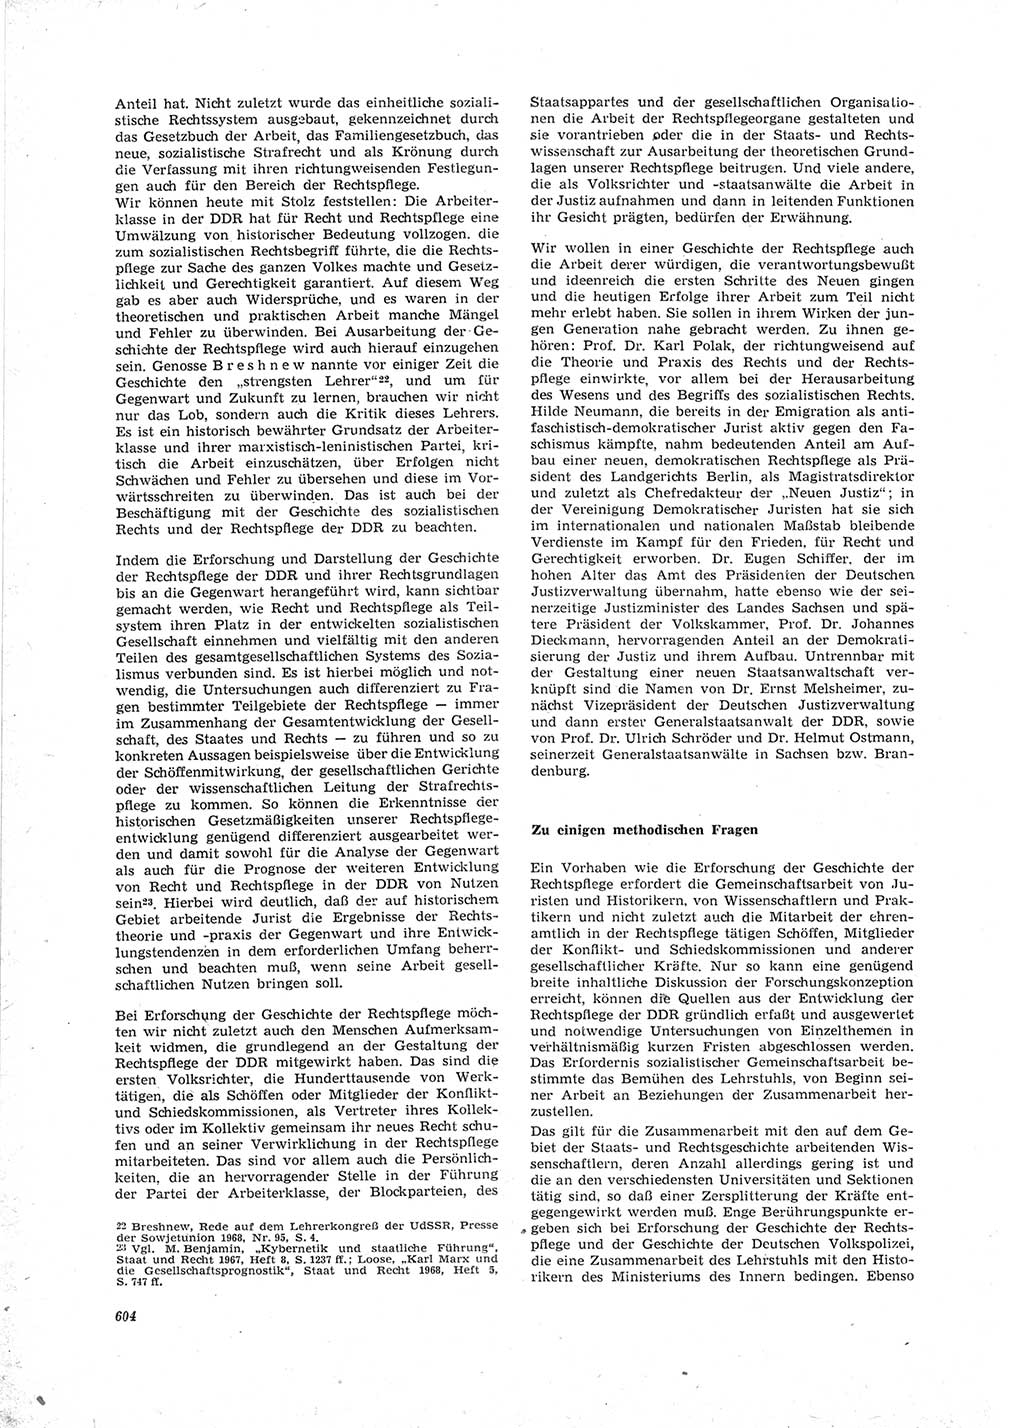 Neue Justiz (NJ), Zeitschrift für Recht und Rechtswissenschaft [Deutsche Demokratische Republik (DDR)], 23. Jahrgang 1969, Seite 604 (NJ DDR 1969, S. 604)